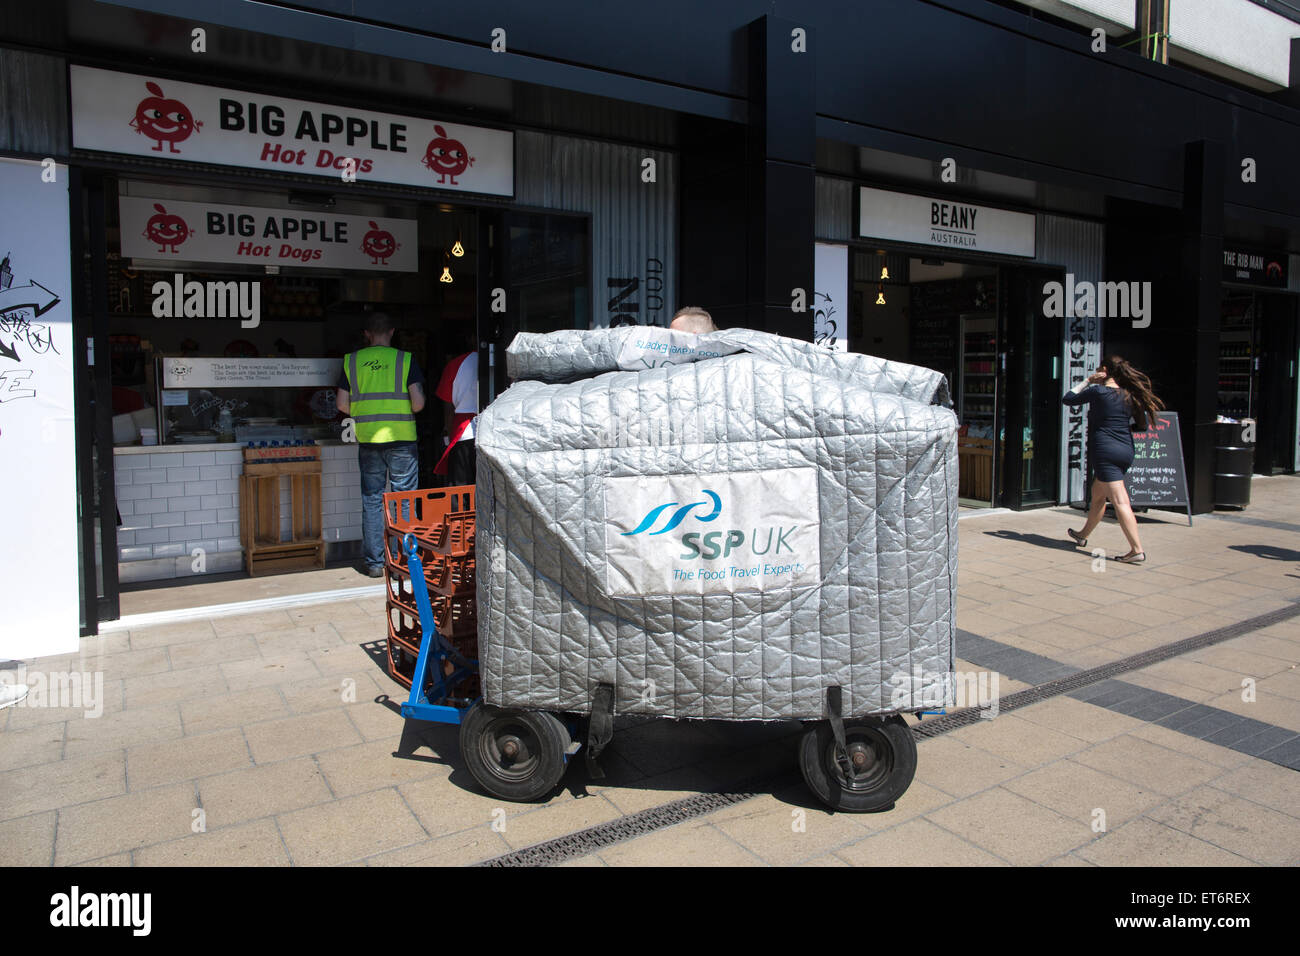 Groupe SSP (Select Service Partner) experts voyage la livraison de nourriture à l'un de leurs points de vente à Euston, Londres, UK Banque D'Images